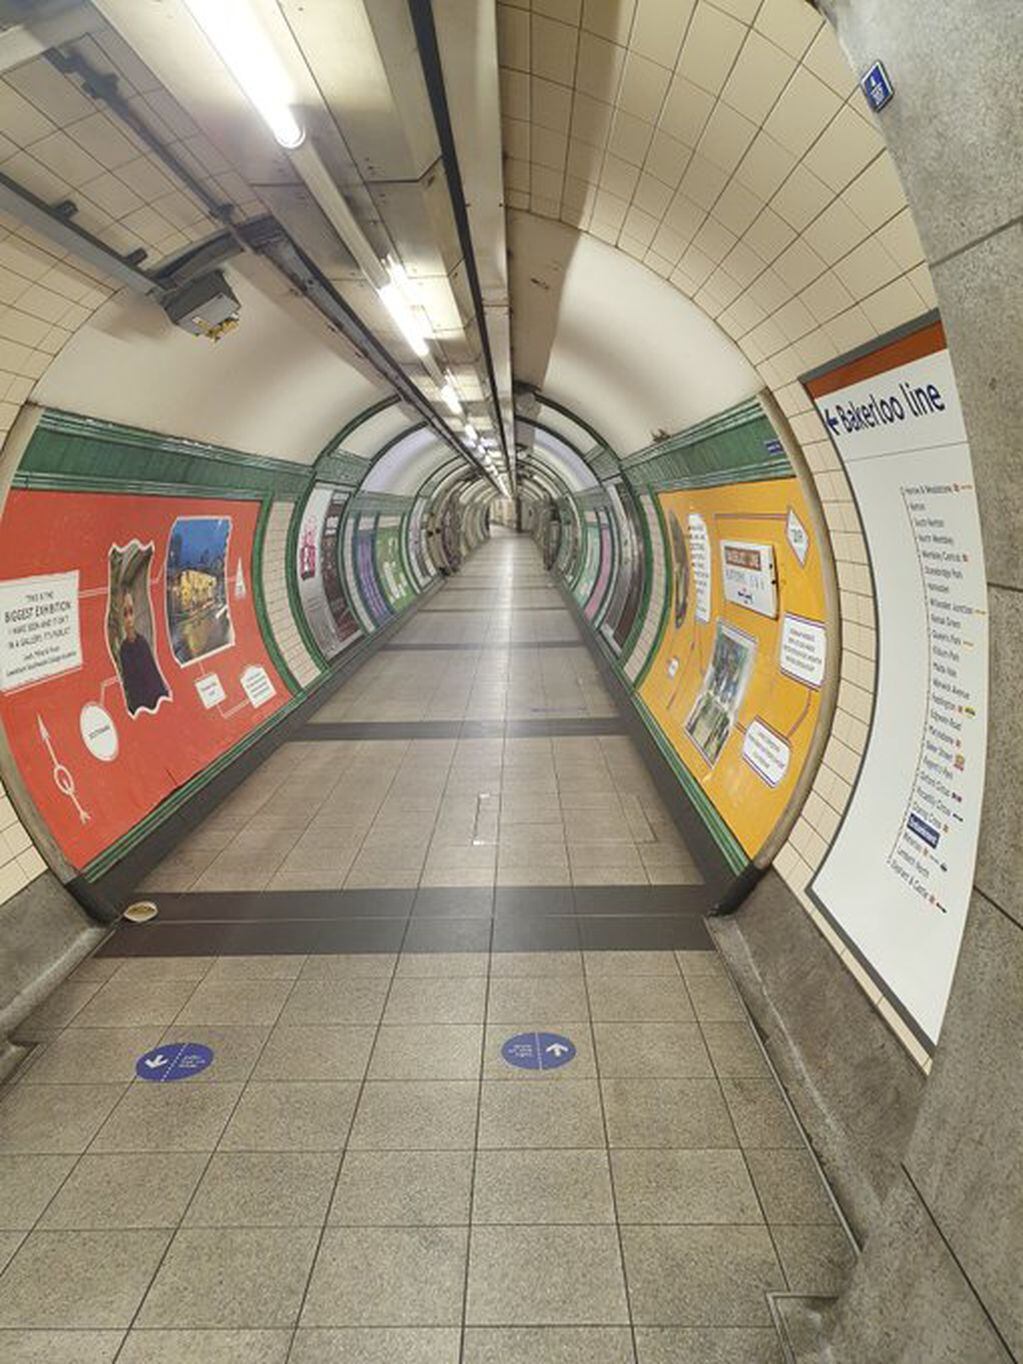 Una imagen de la estación de subte Embankment de Londres.